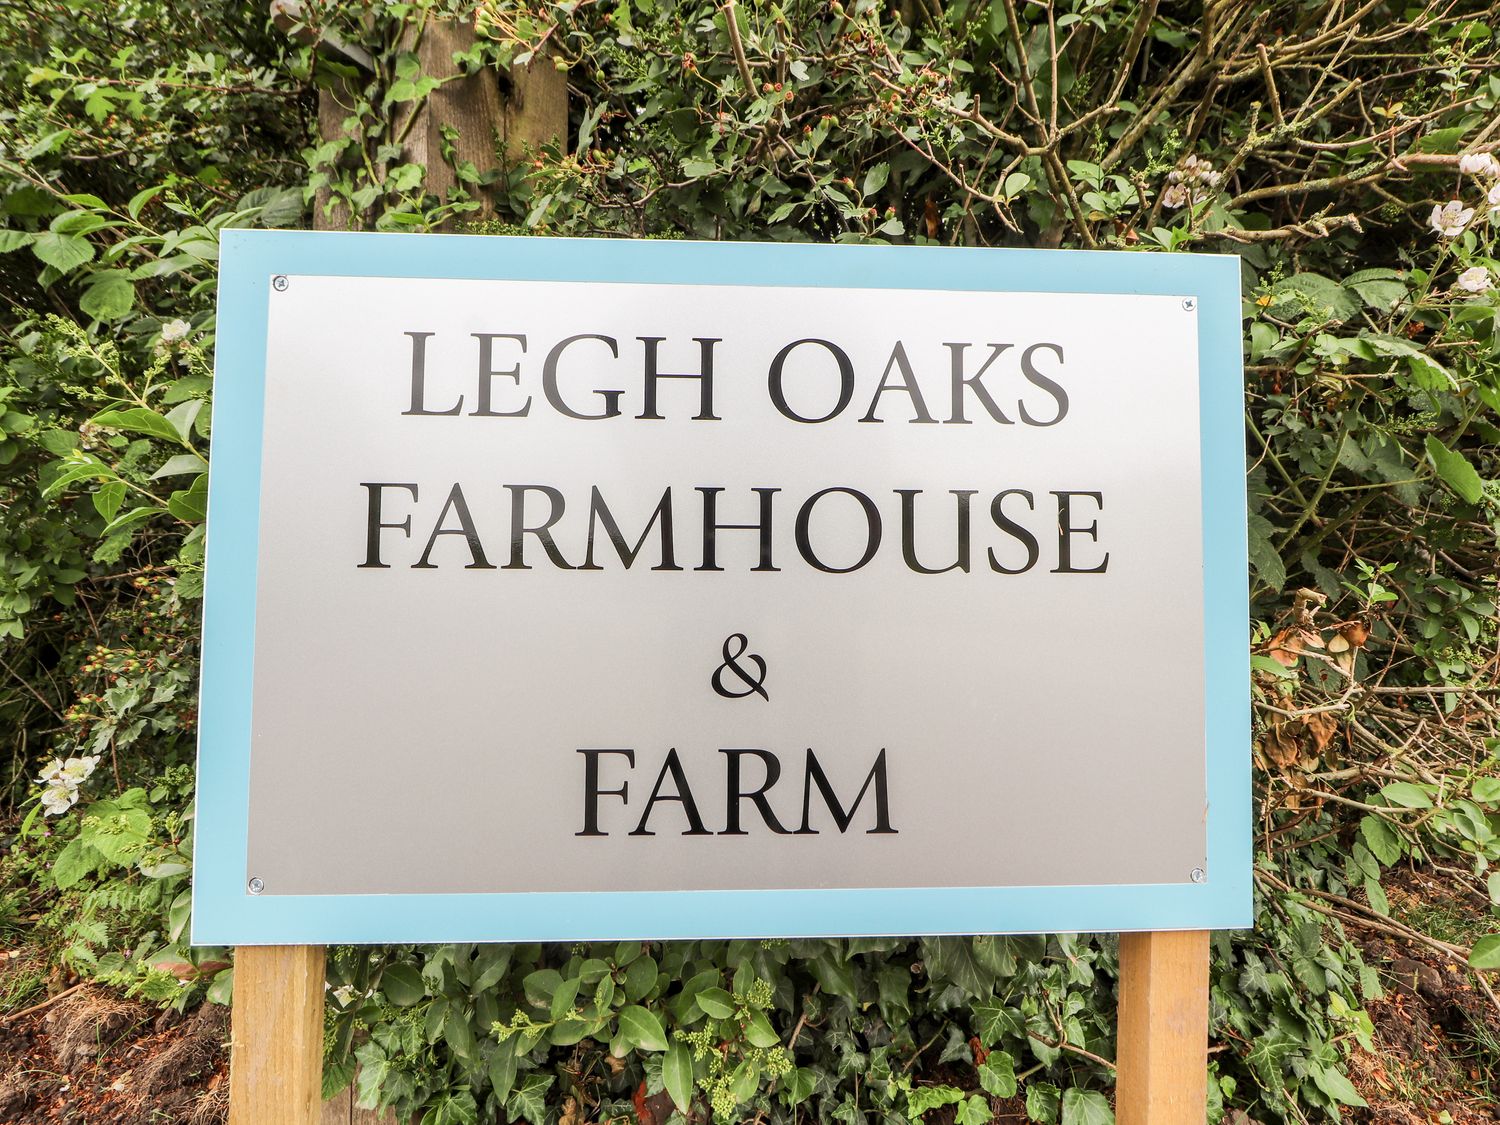 Legh Oaks Farm, Knutsford